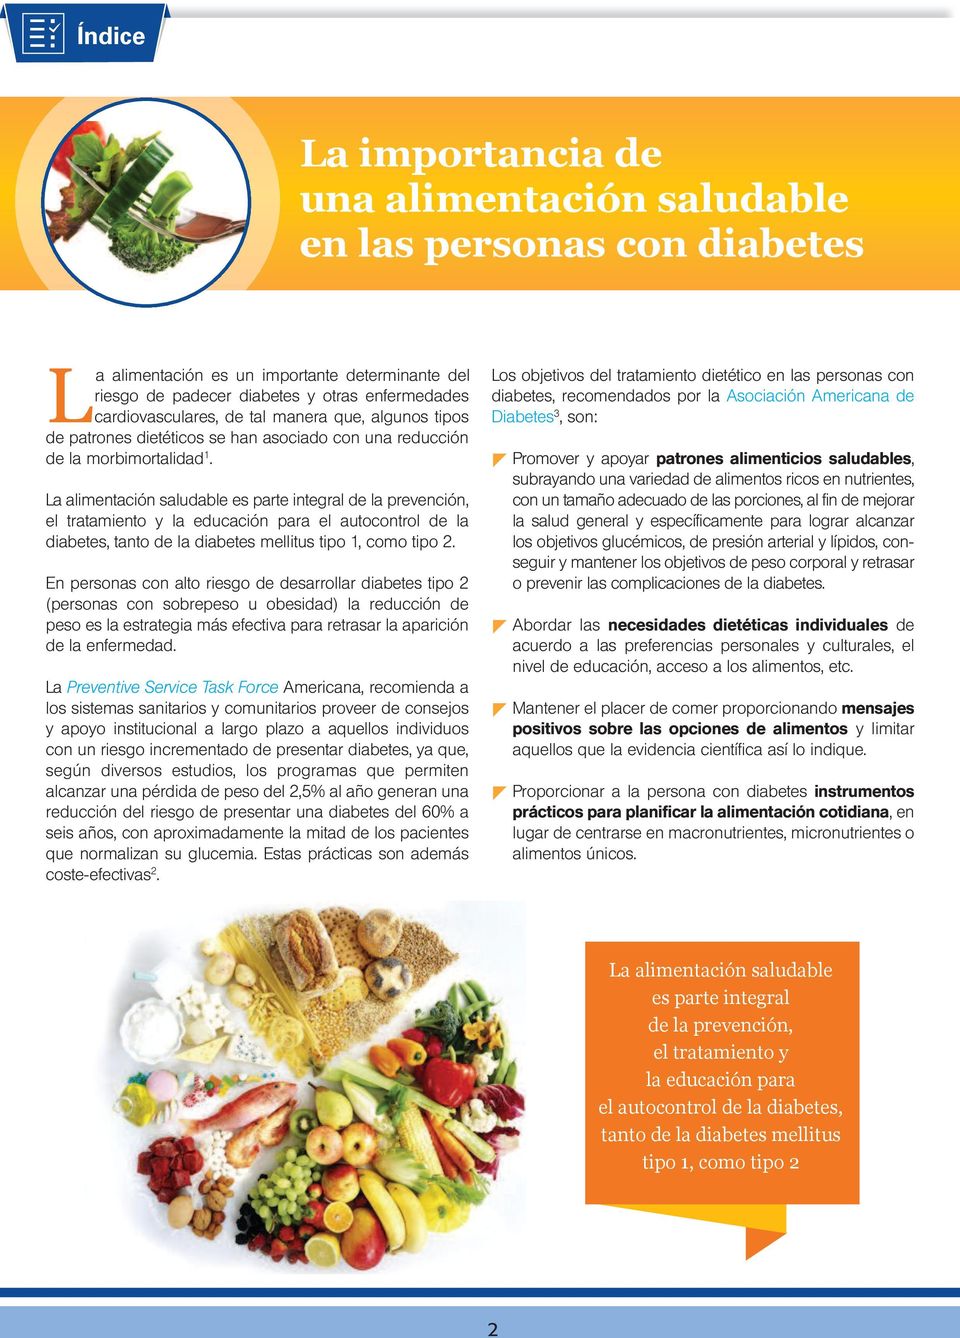 La alimentación saludable es parte integral de la prevención, el tratamiento y la educación para el autocontrol de la diabetes, tanto de la diabetes mellitus tipo 1, como tipo 2.